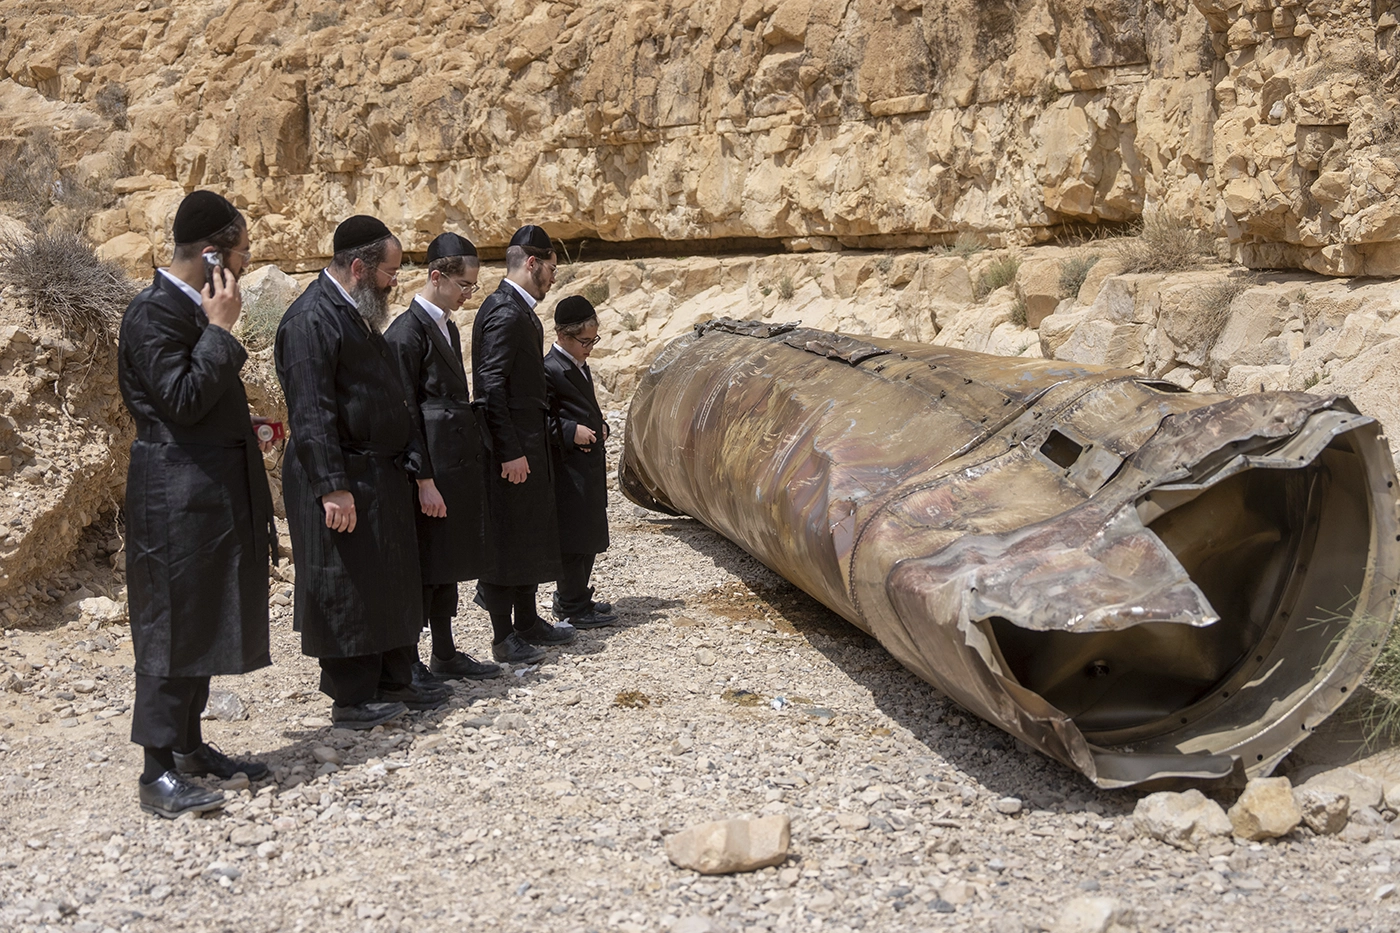 Евреи разглядывают упавший в пустыне корпус баллистической ракеты. Фото дня